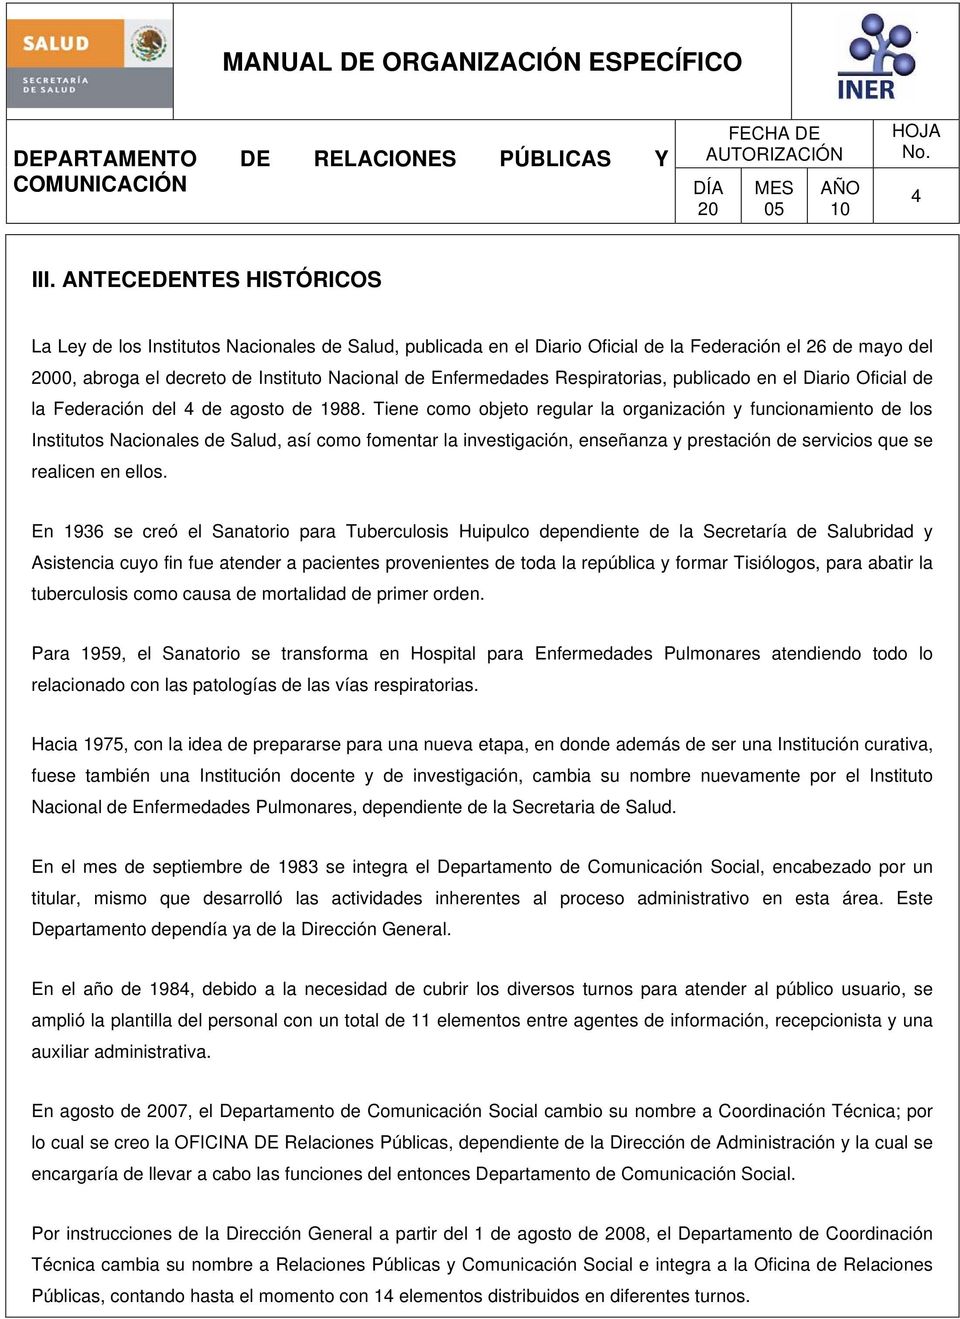 Respiratorias, publicado en el Diario Oficial de la Federación del 4 de agosto de 1988.